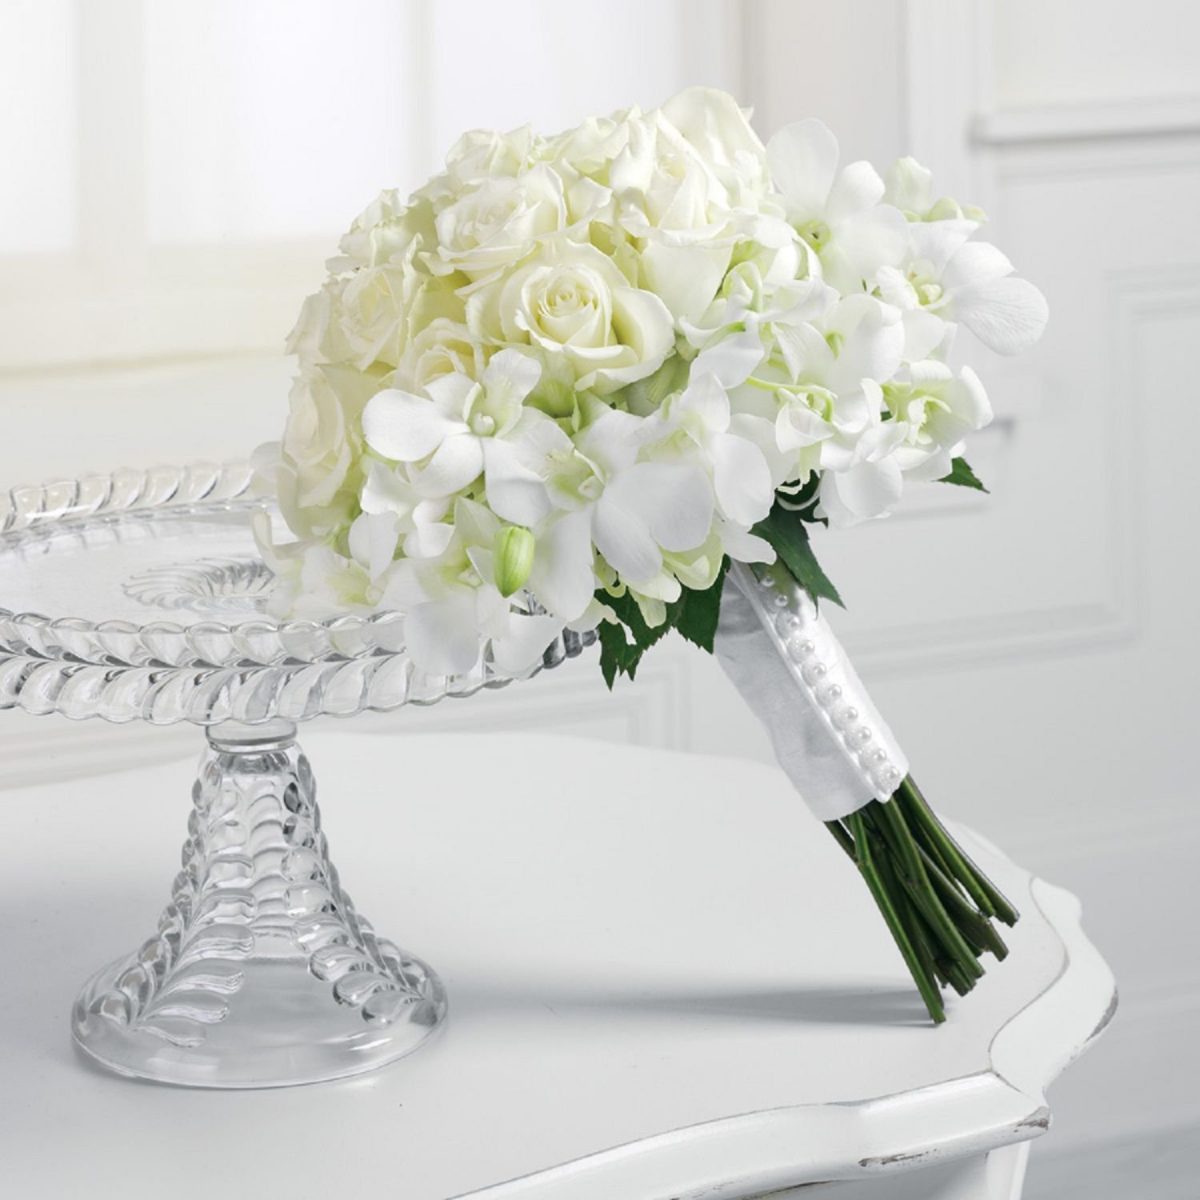 Купить белый букет невесты из гортензий и роз по доступной цене с доставкой  в Москве и области в интернет-магазине Город Букетов